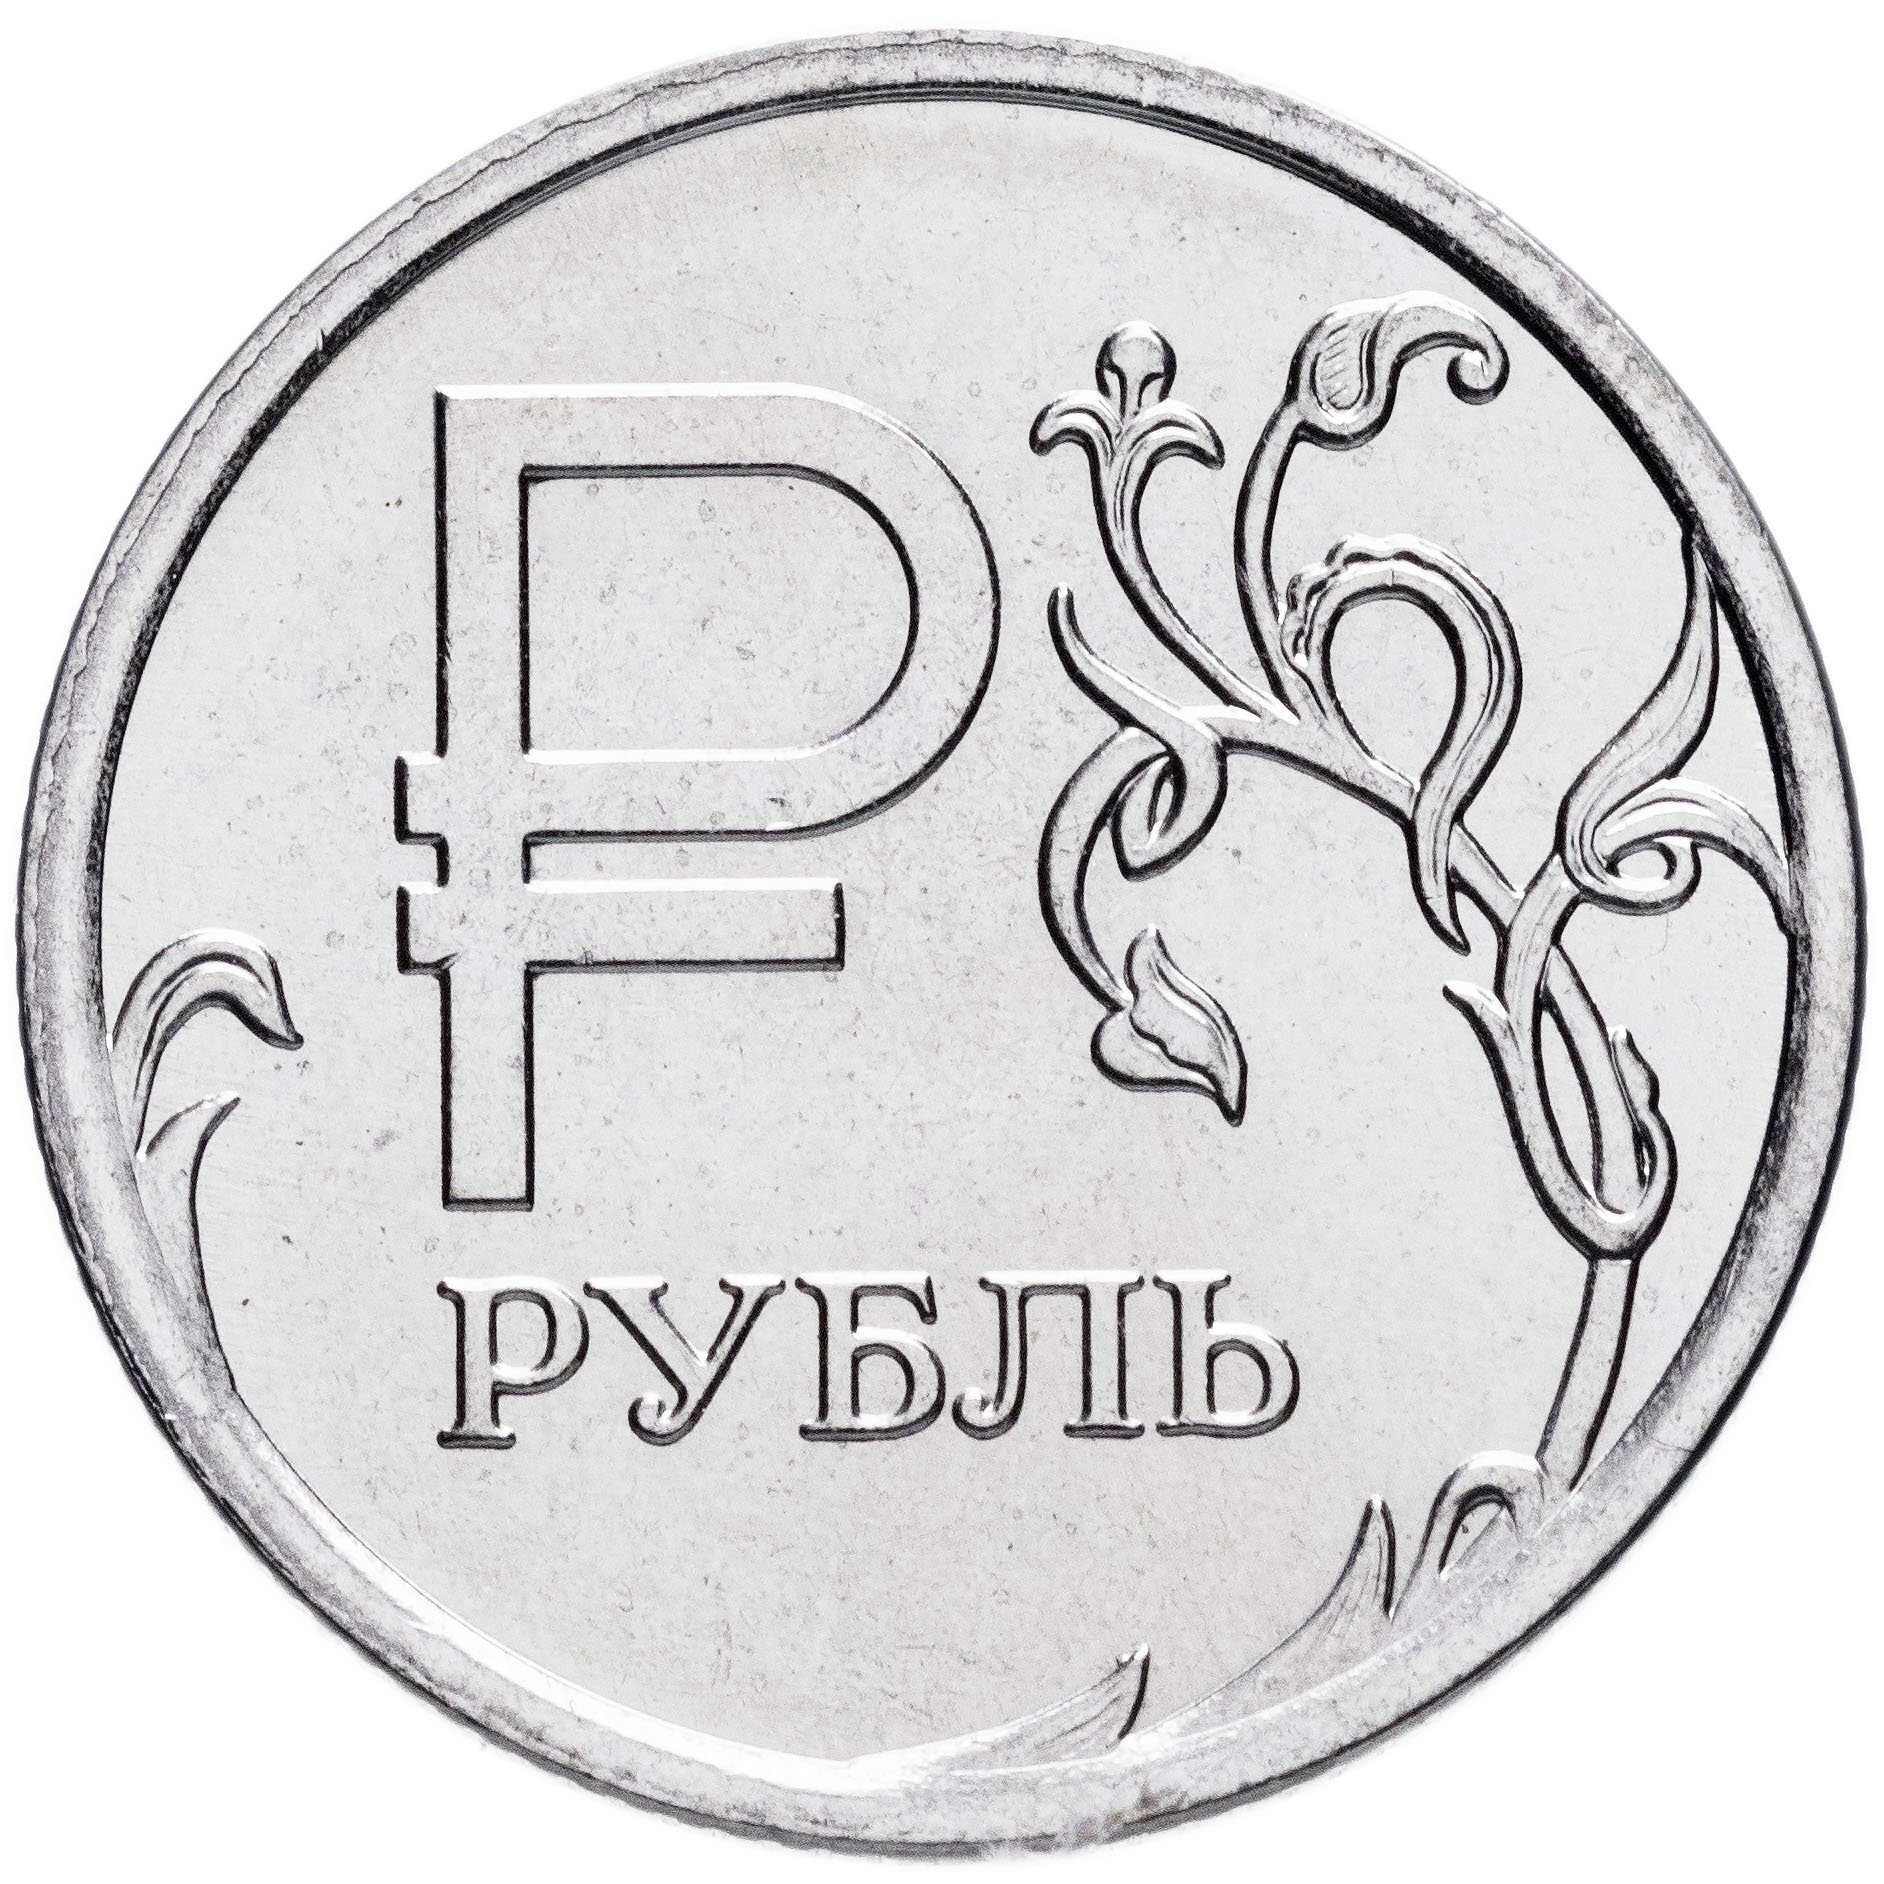 Вон рубл. Монета 1 рубль 2014 года. Монеты 1 рубль 2014 года с буквой р. Монета рубль вектор. Юбилейный рубль 2014 года.